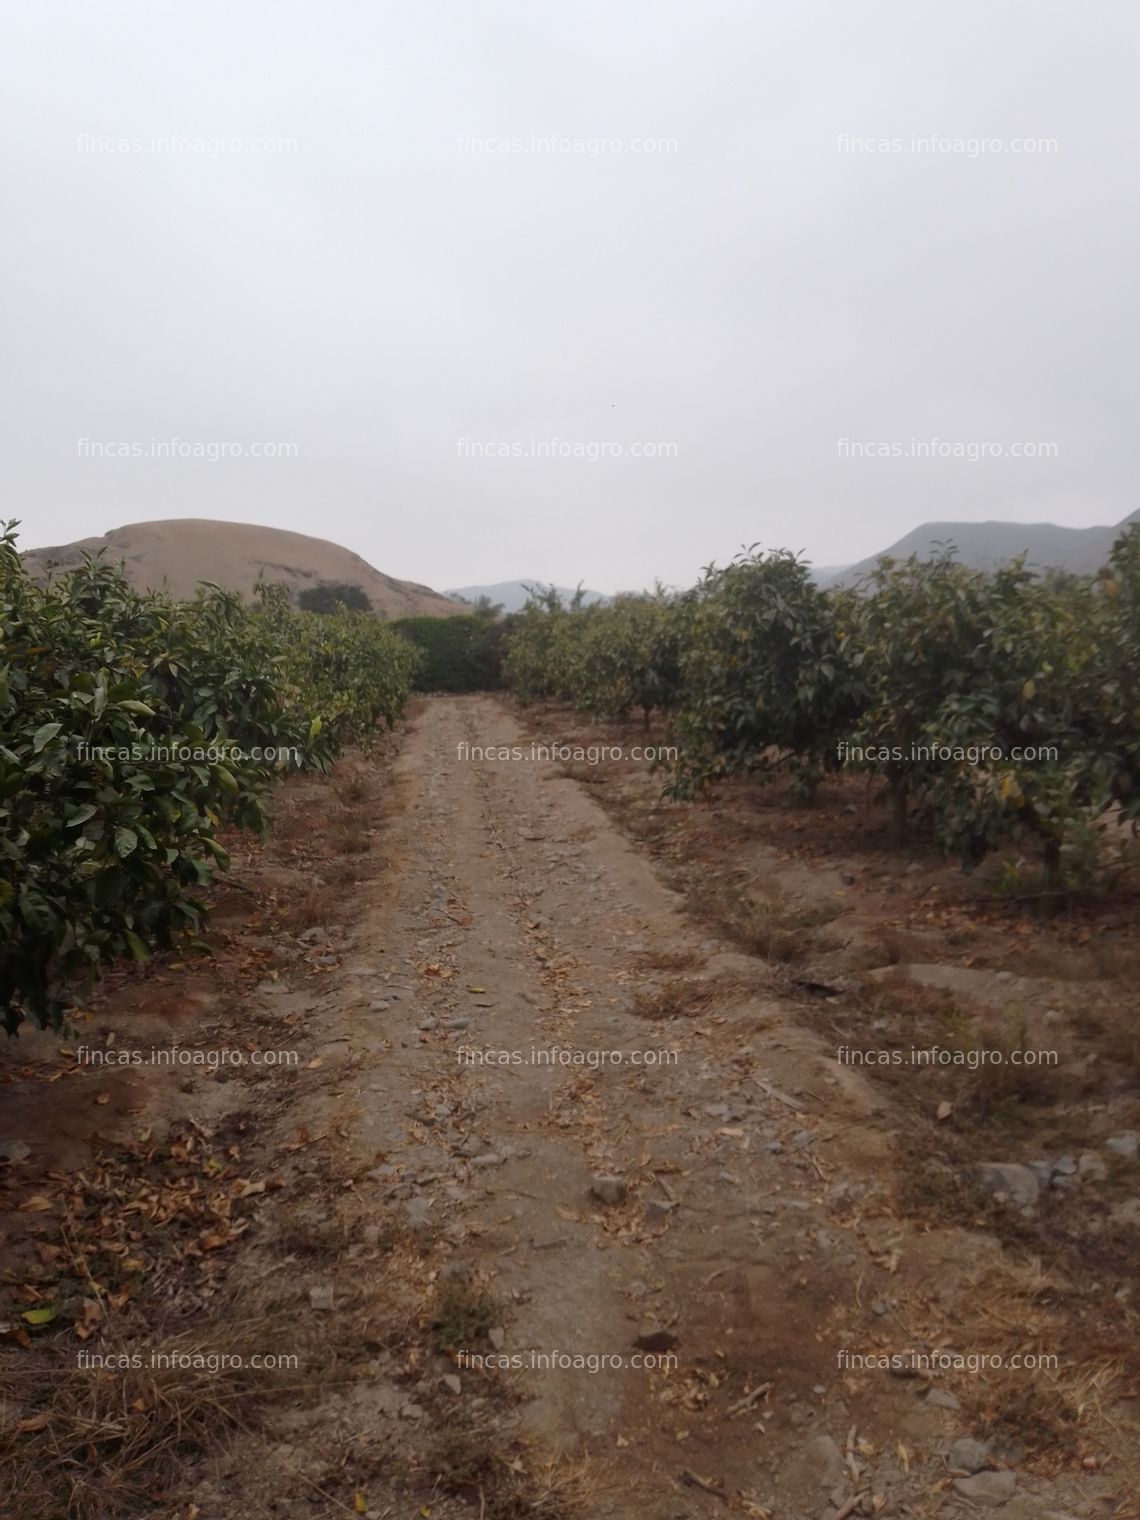 Fotos de Vendo Terreno agrícola, con sembrio de mandarina.